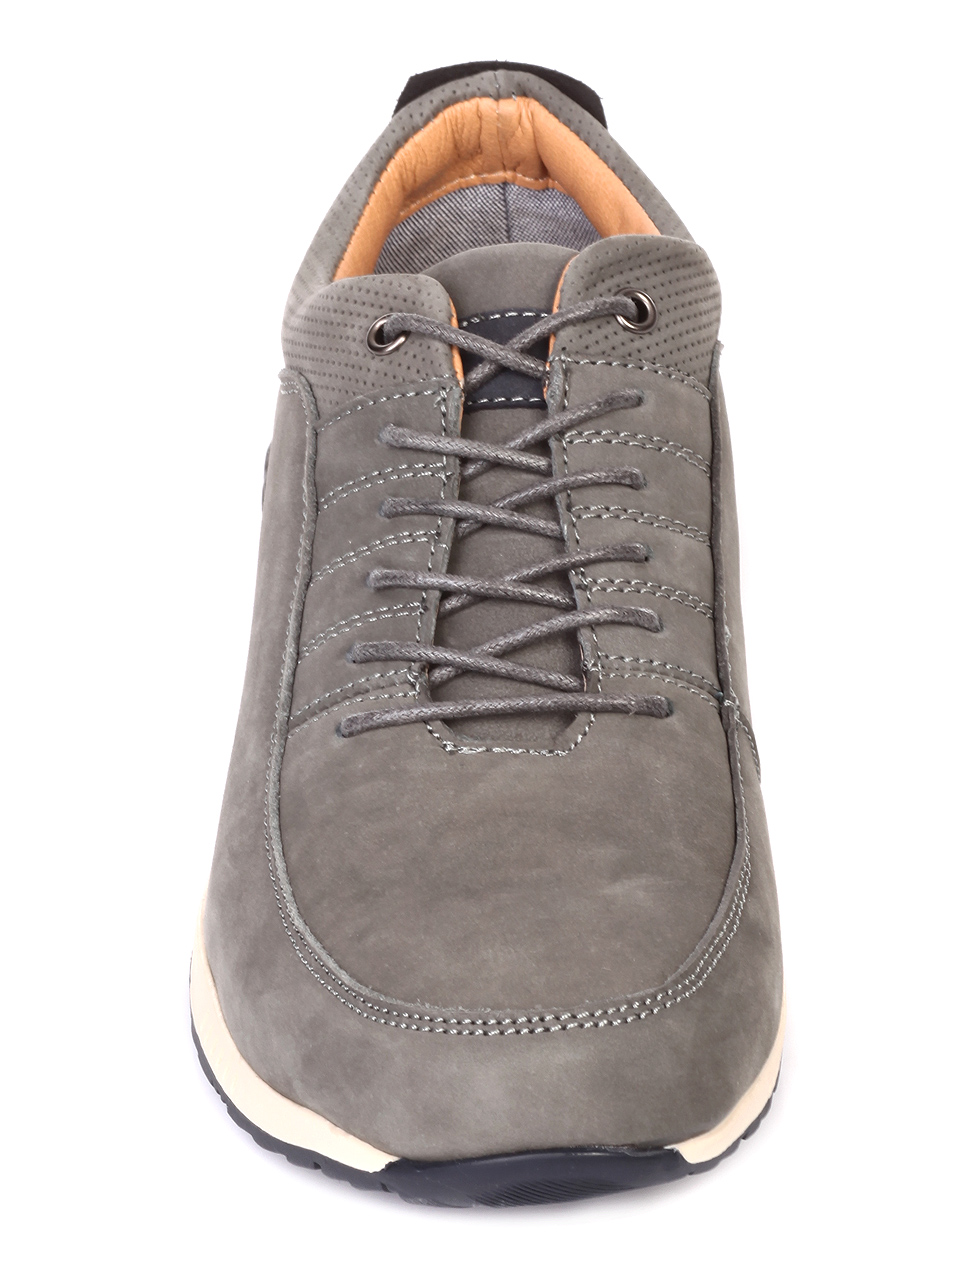 Ежедневни мъжки обувки от естествен набук 7W-19111 grey